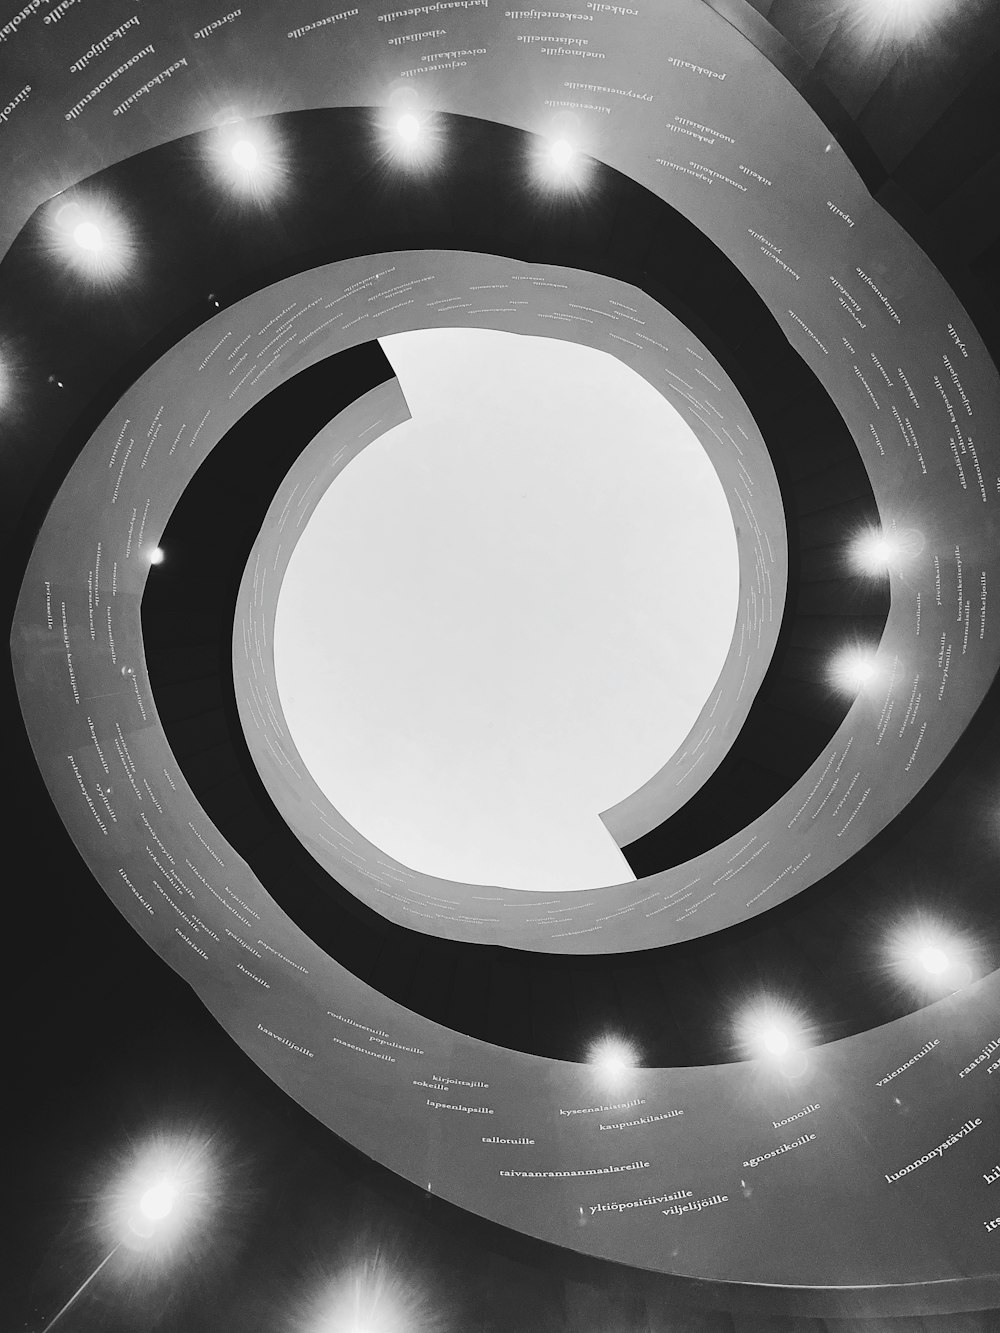 円形構造の白黒写真